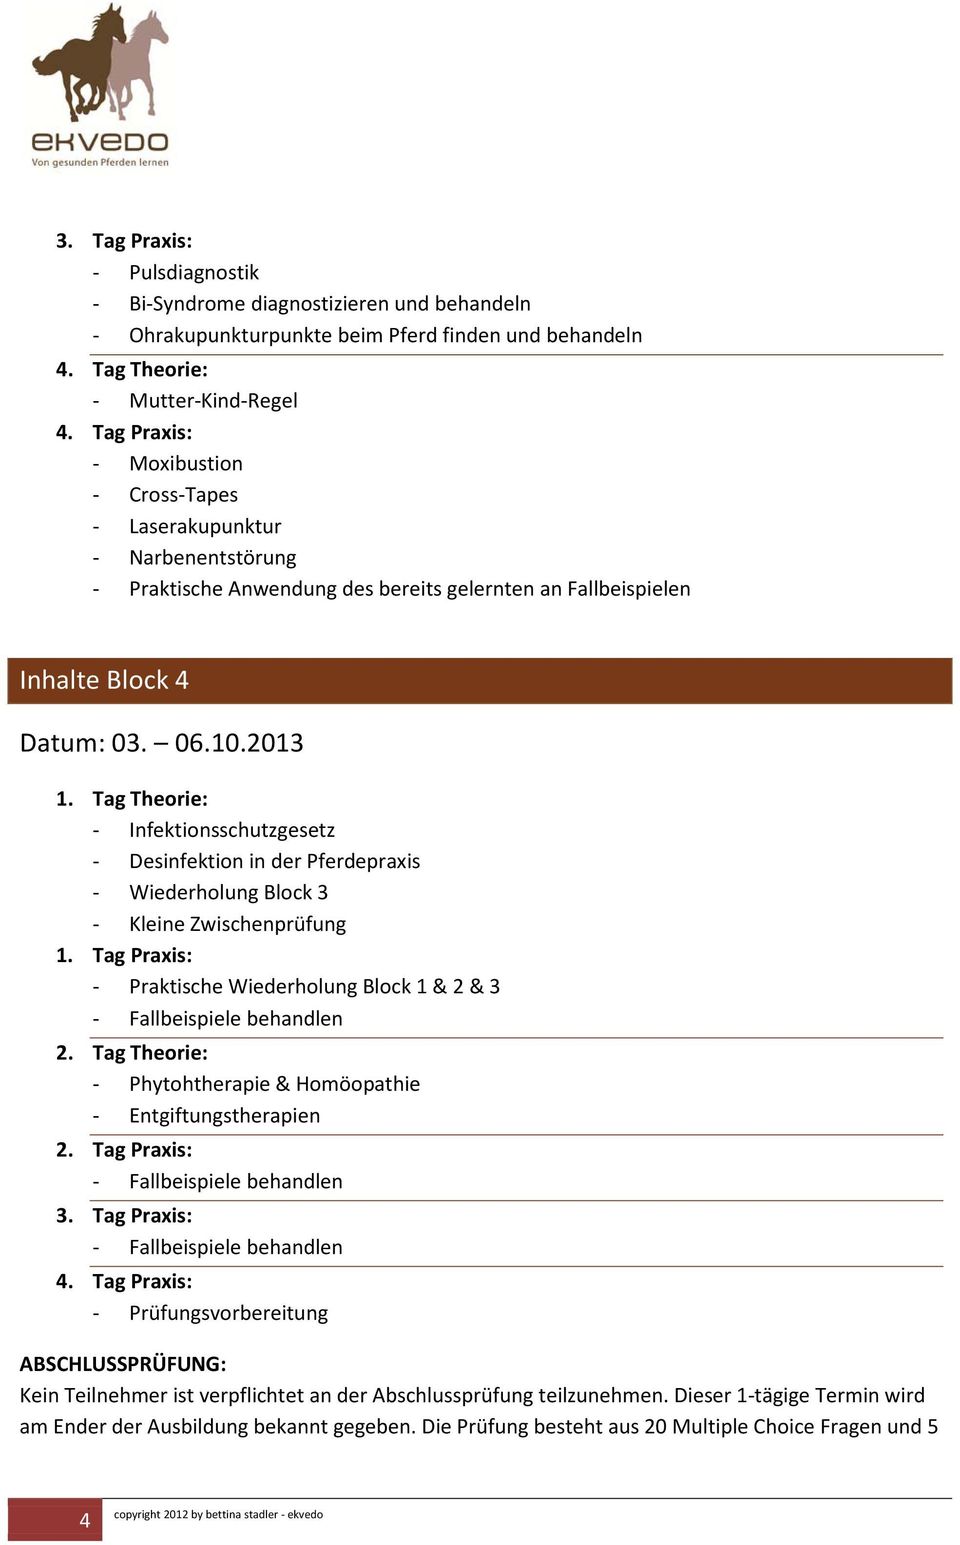 2013 - Infektionsschutzgesetz - Desinfektion in der Pferdepraxis - Wiederholung Block 3 - Kleine Zwischenprüfung - Praktische Wiederholung Block 1 & 2 & 3 - Phytohtherapie &